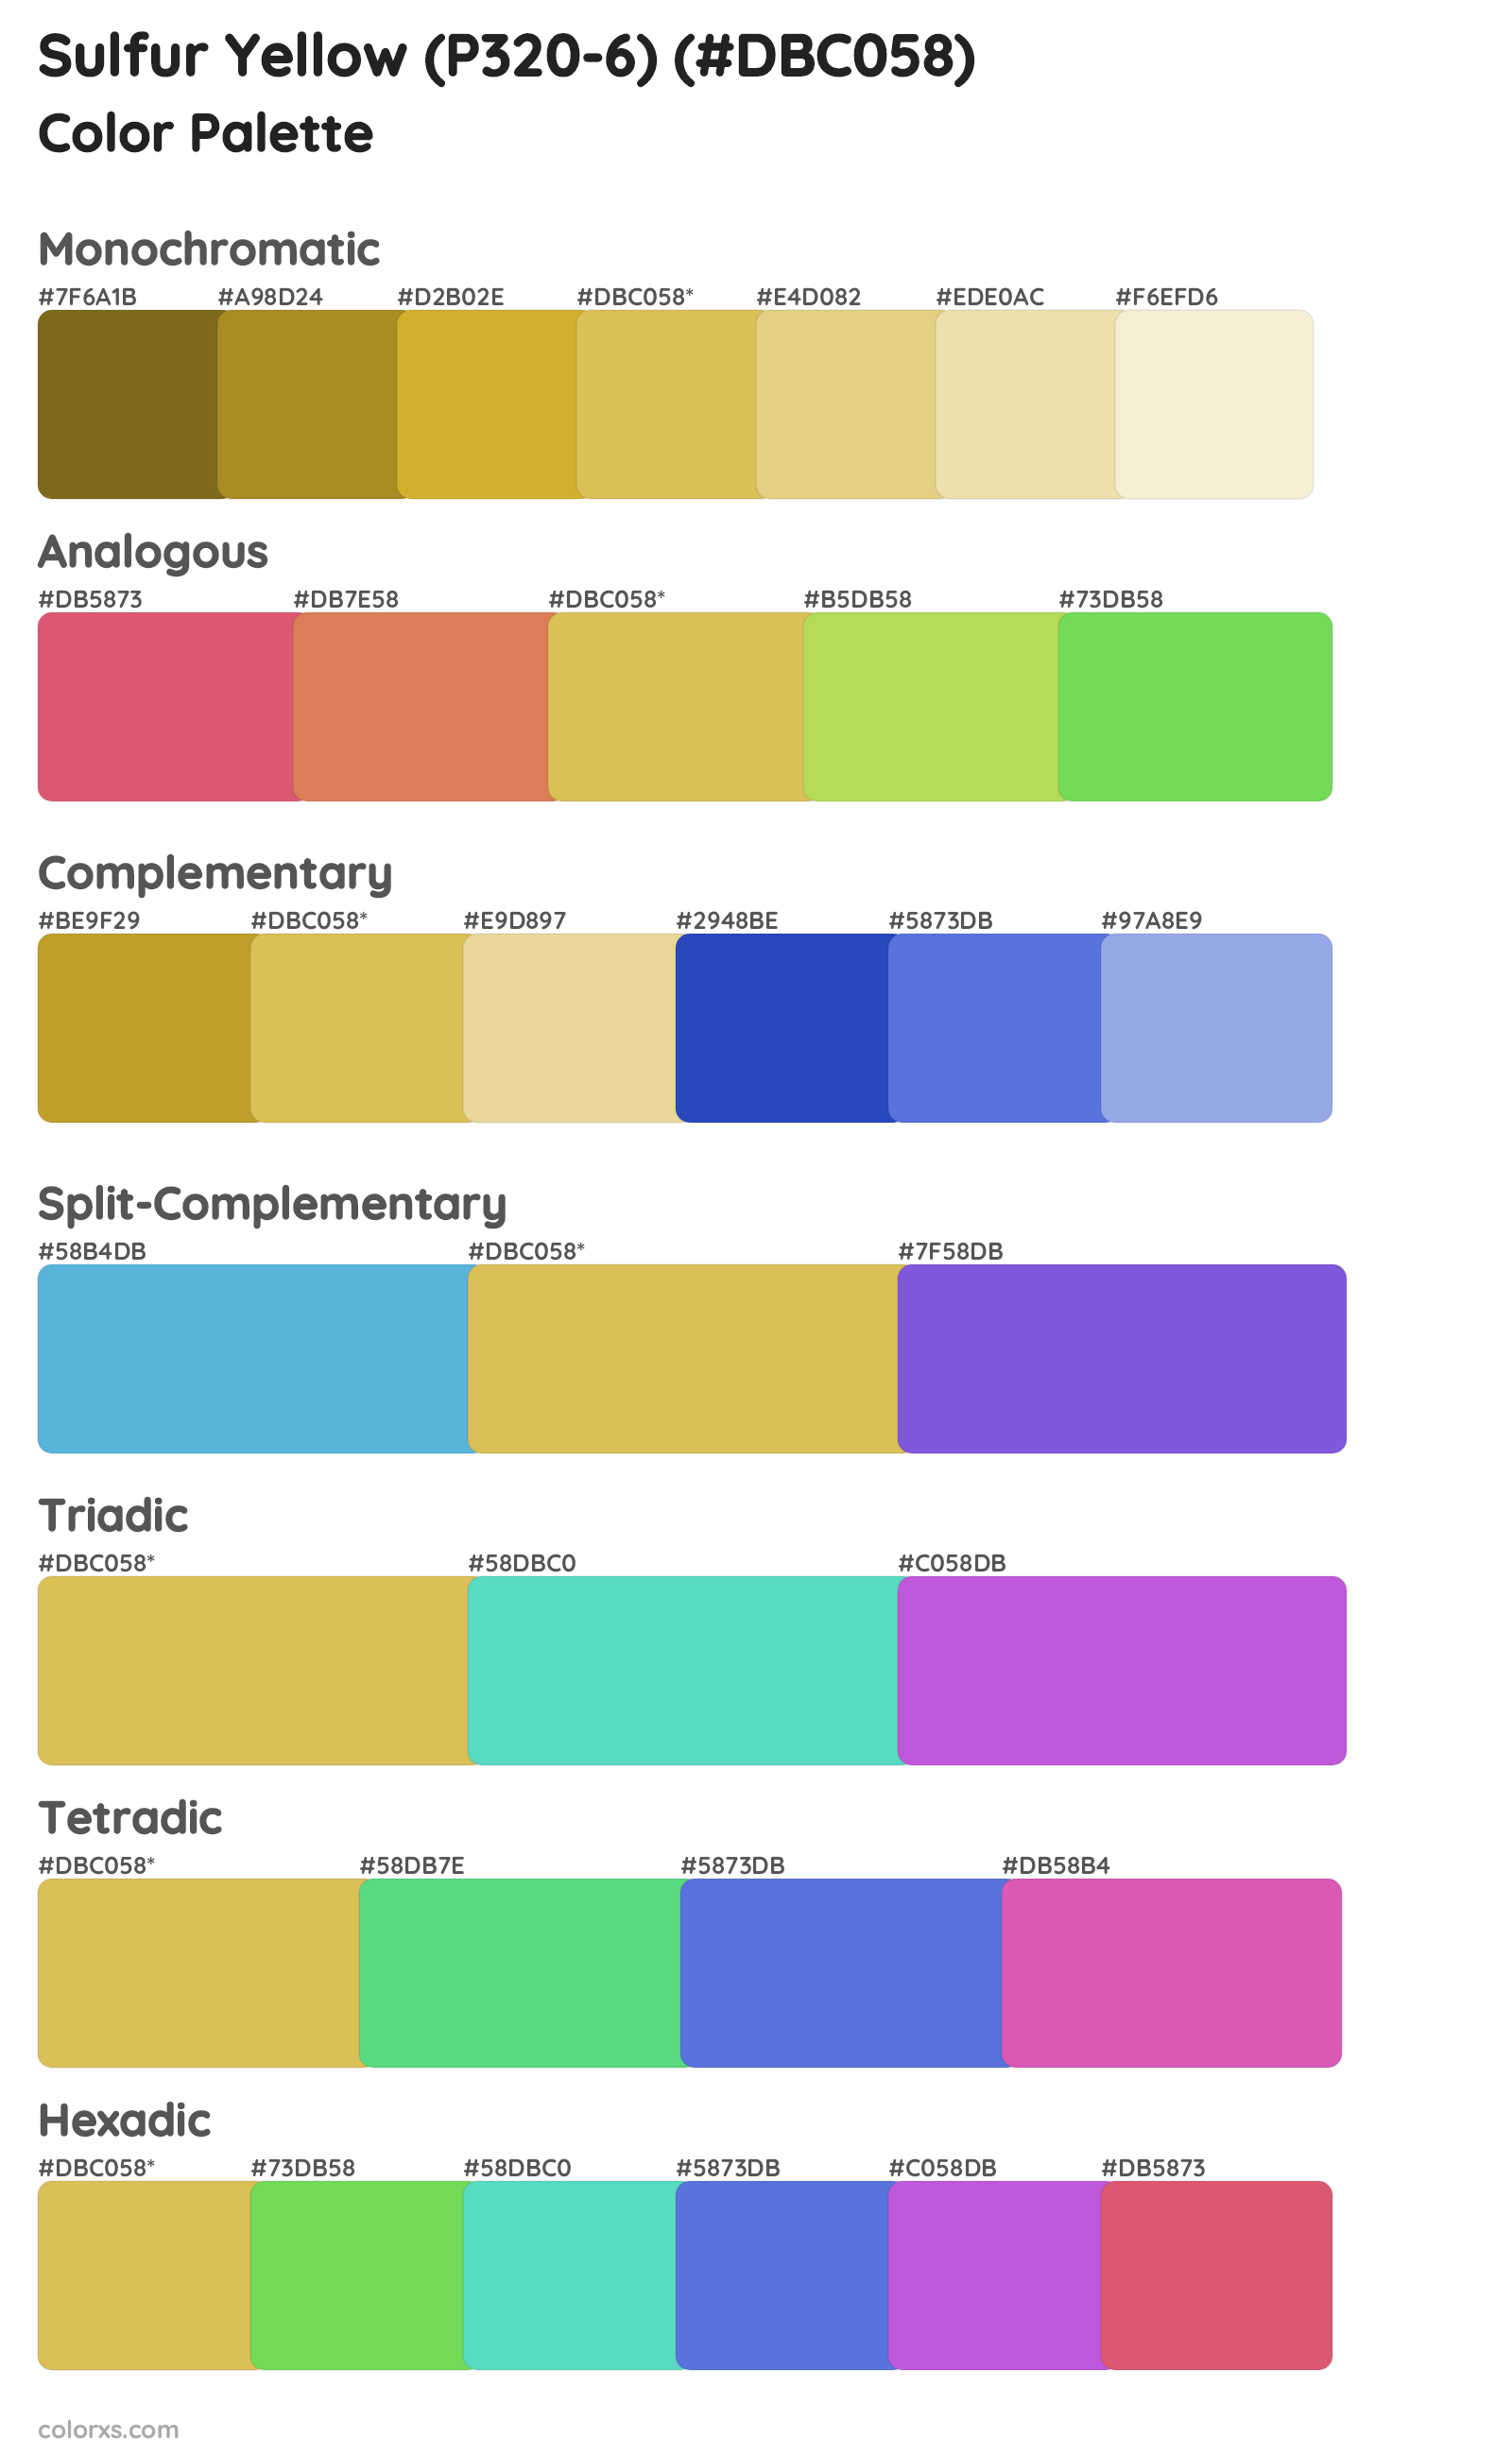 Sulfur Yellow (P320-6) Color Scheme Palettes